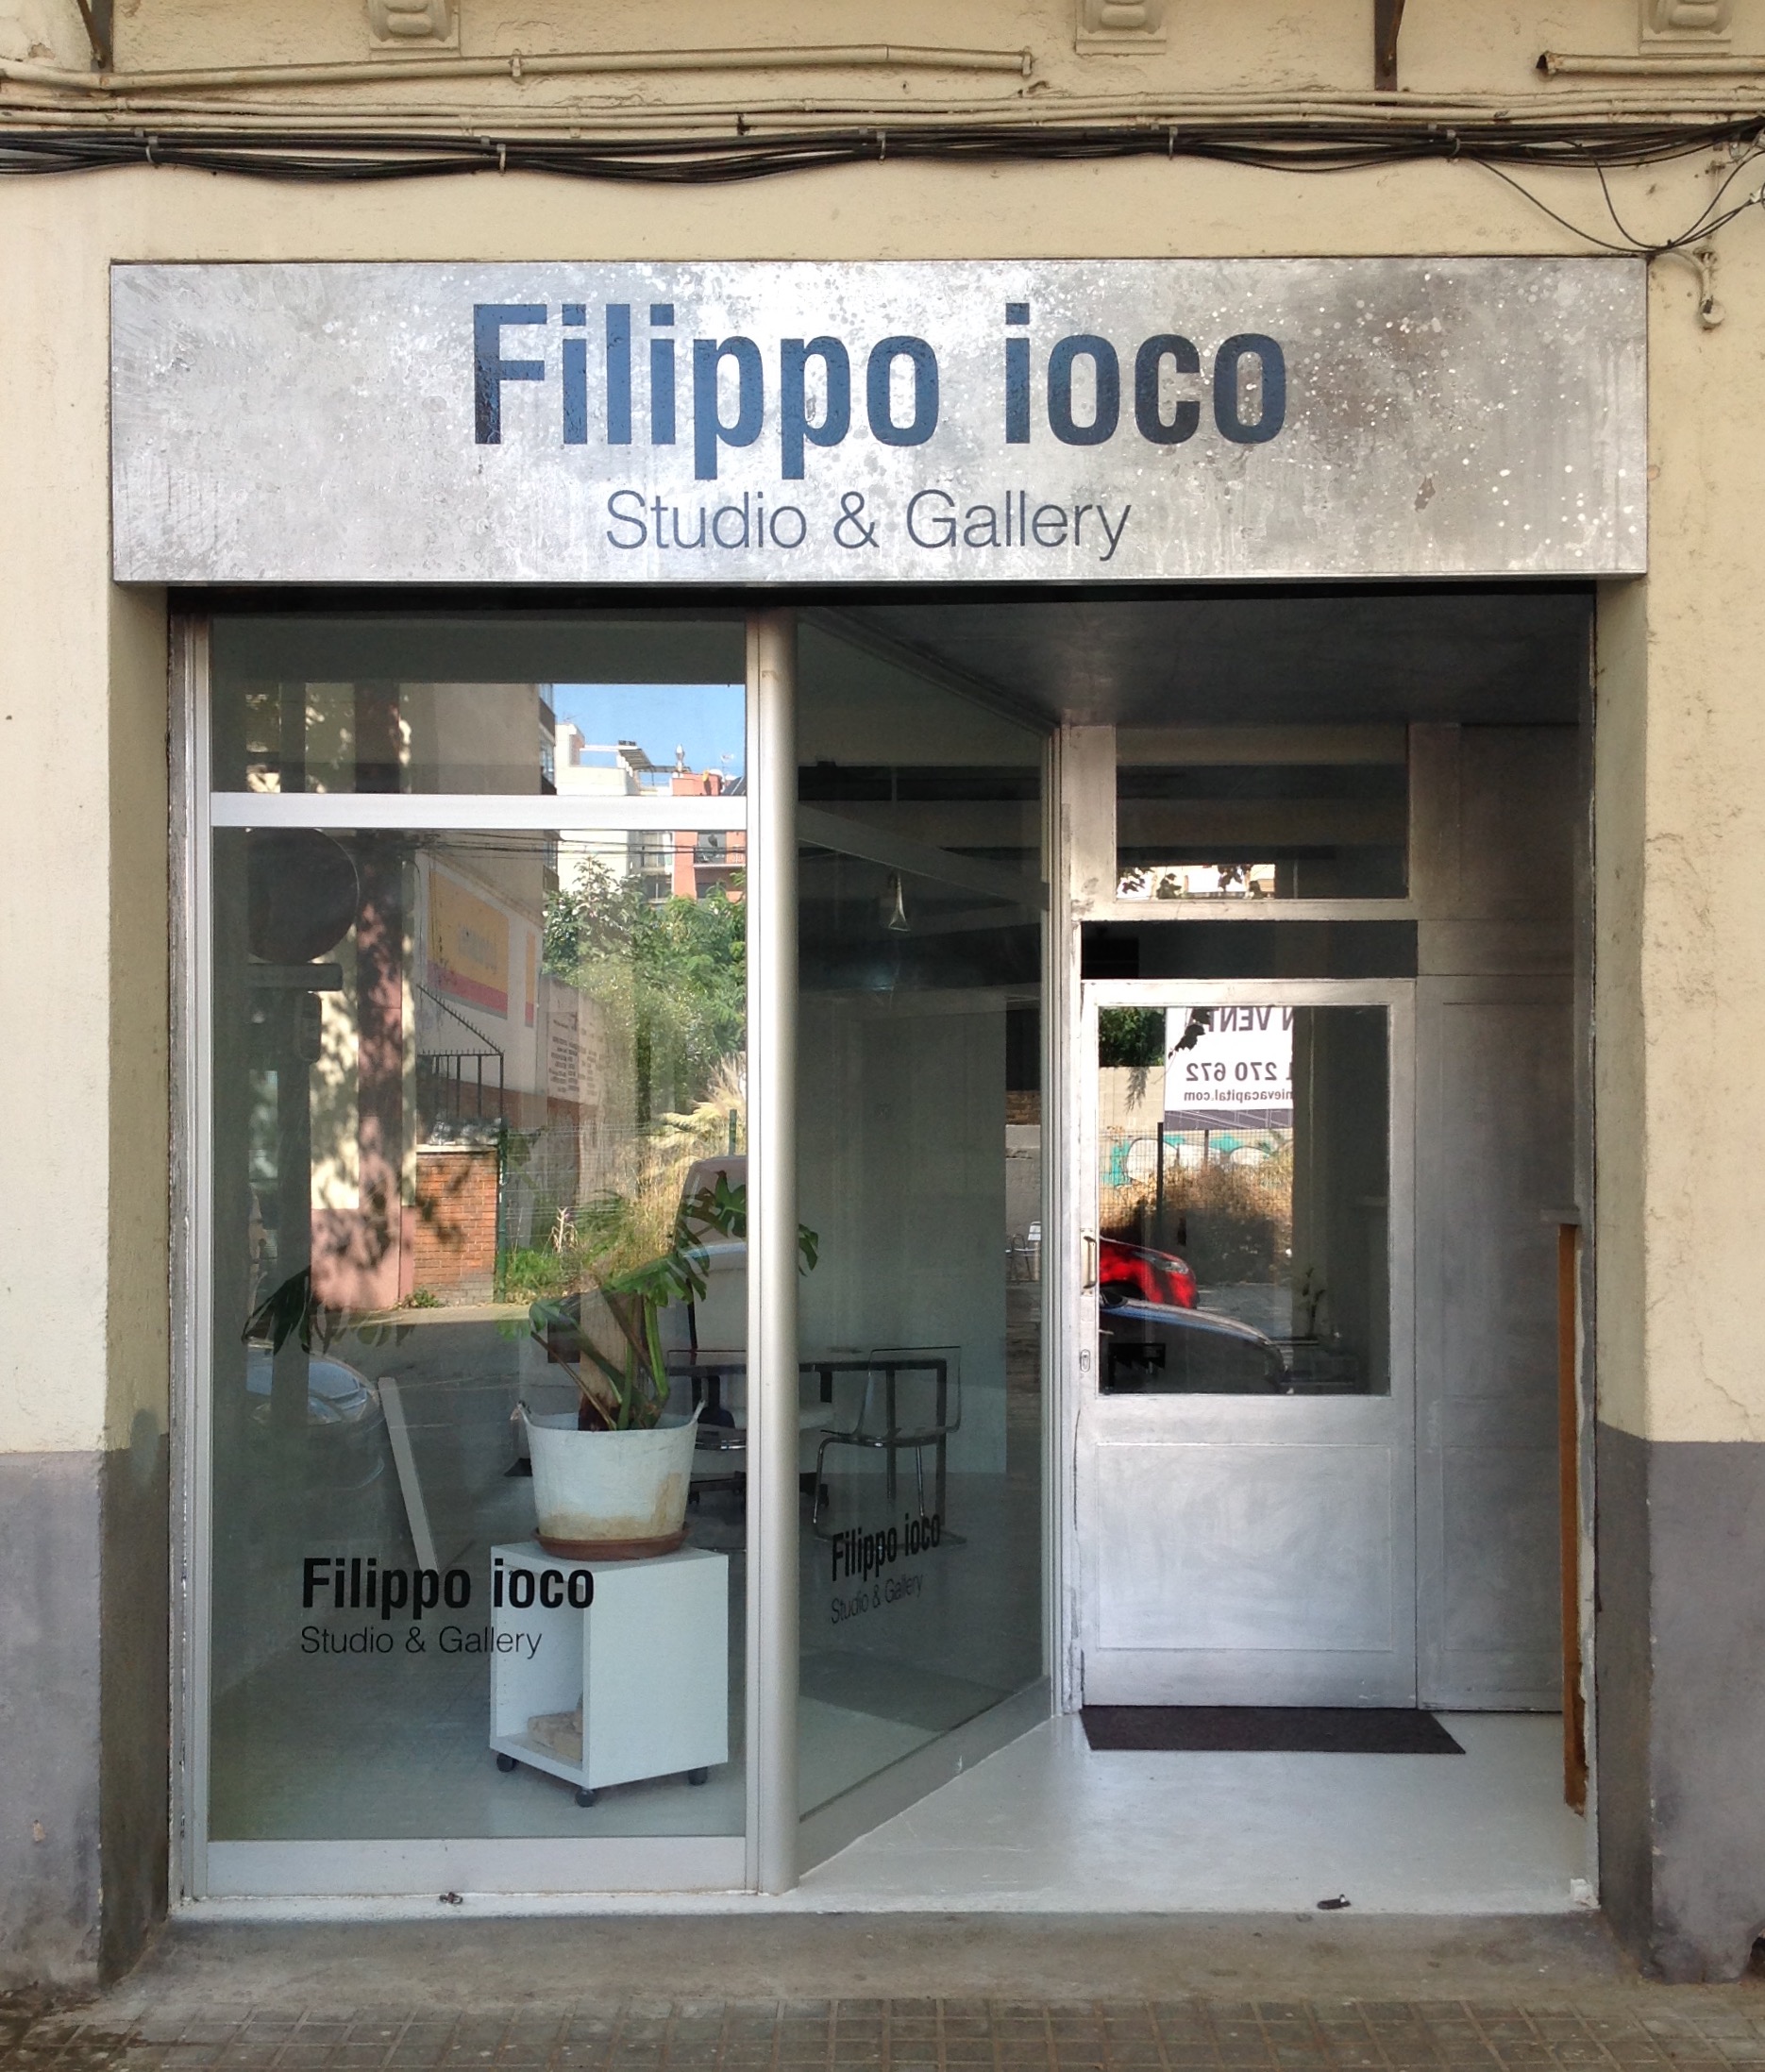 Filippo ioco Studio & Gallery